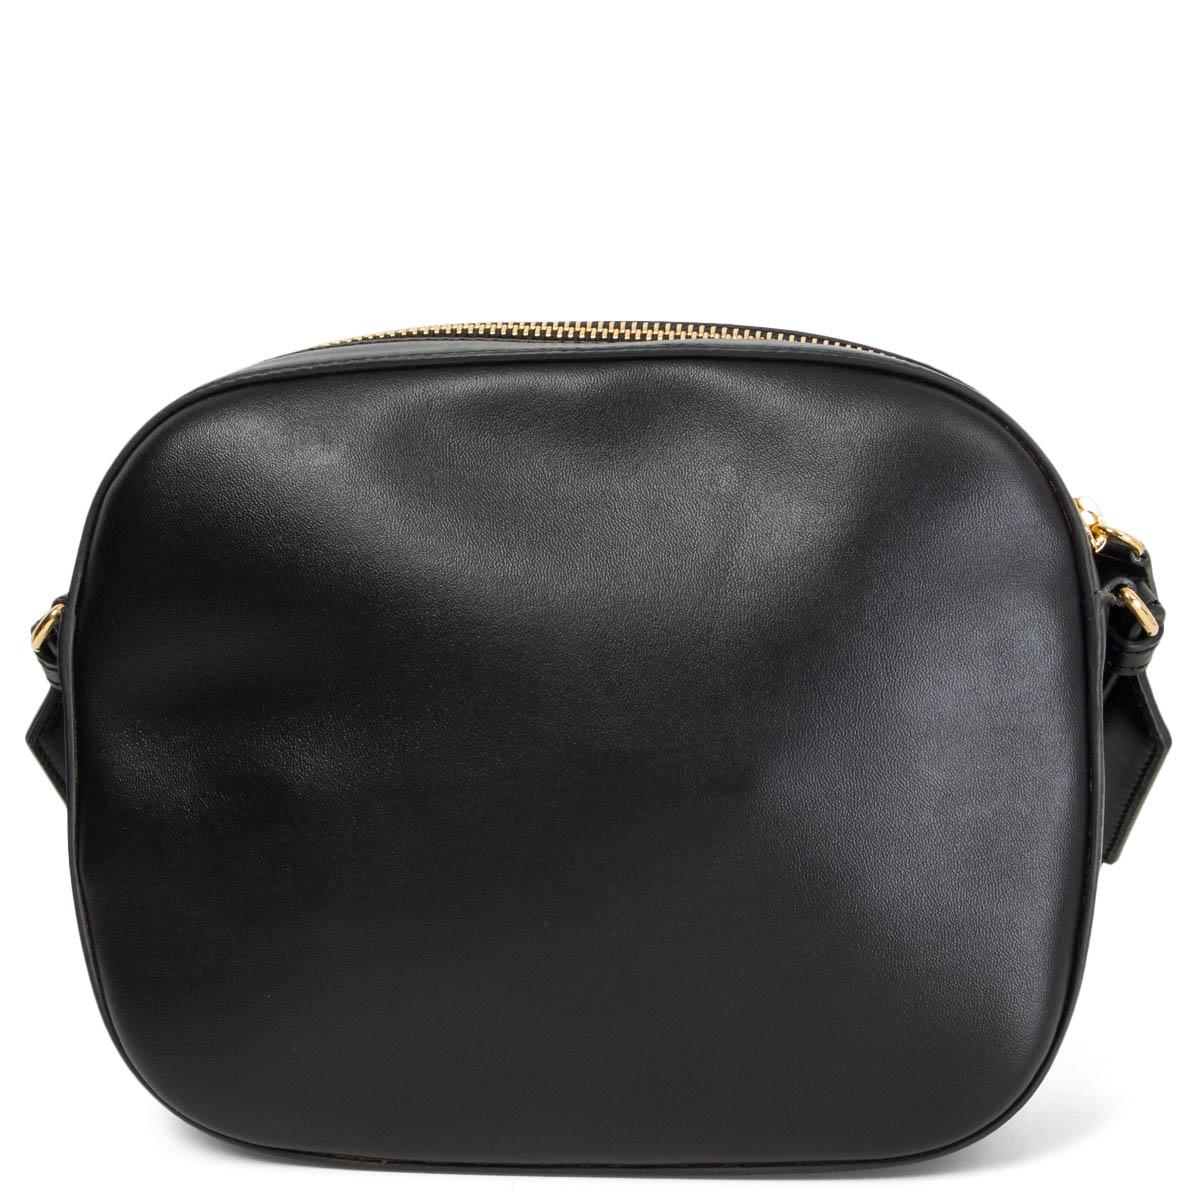 Black STELLA MCCARTNEY black leather LOGO CAMERA Shoulder Bag